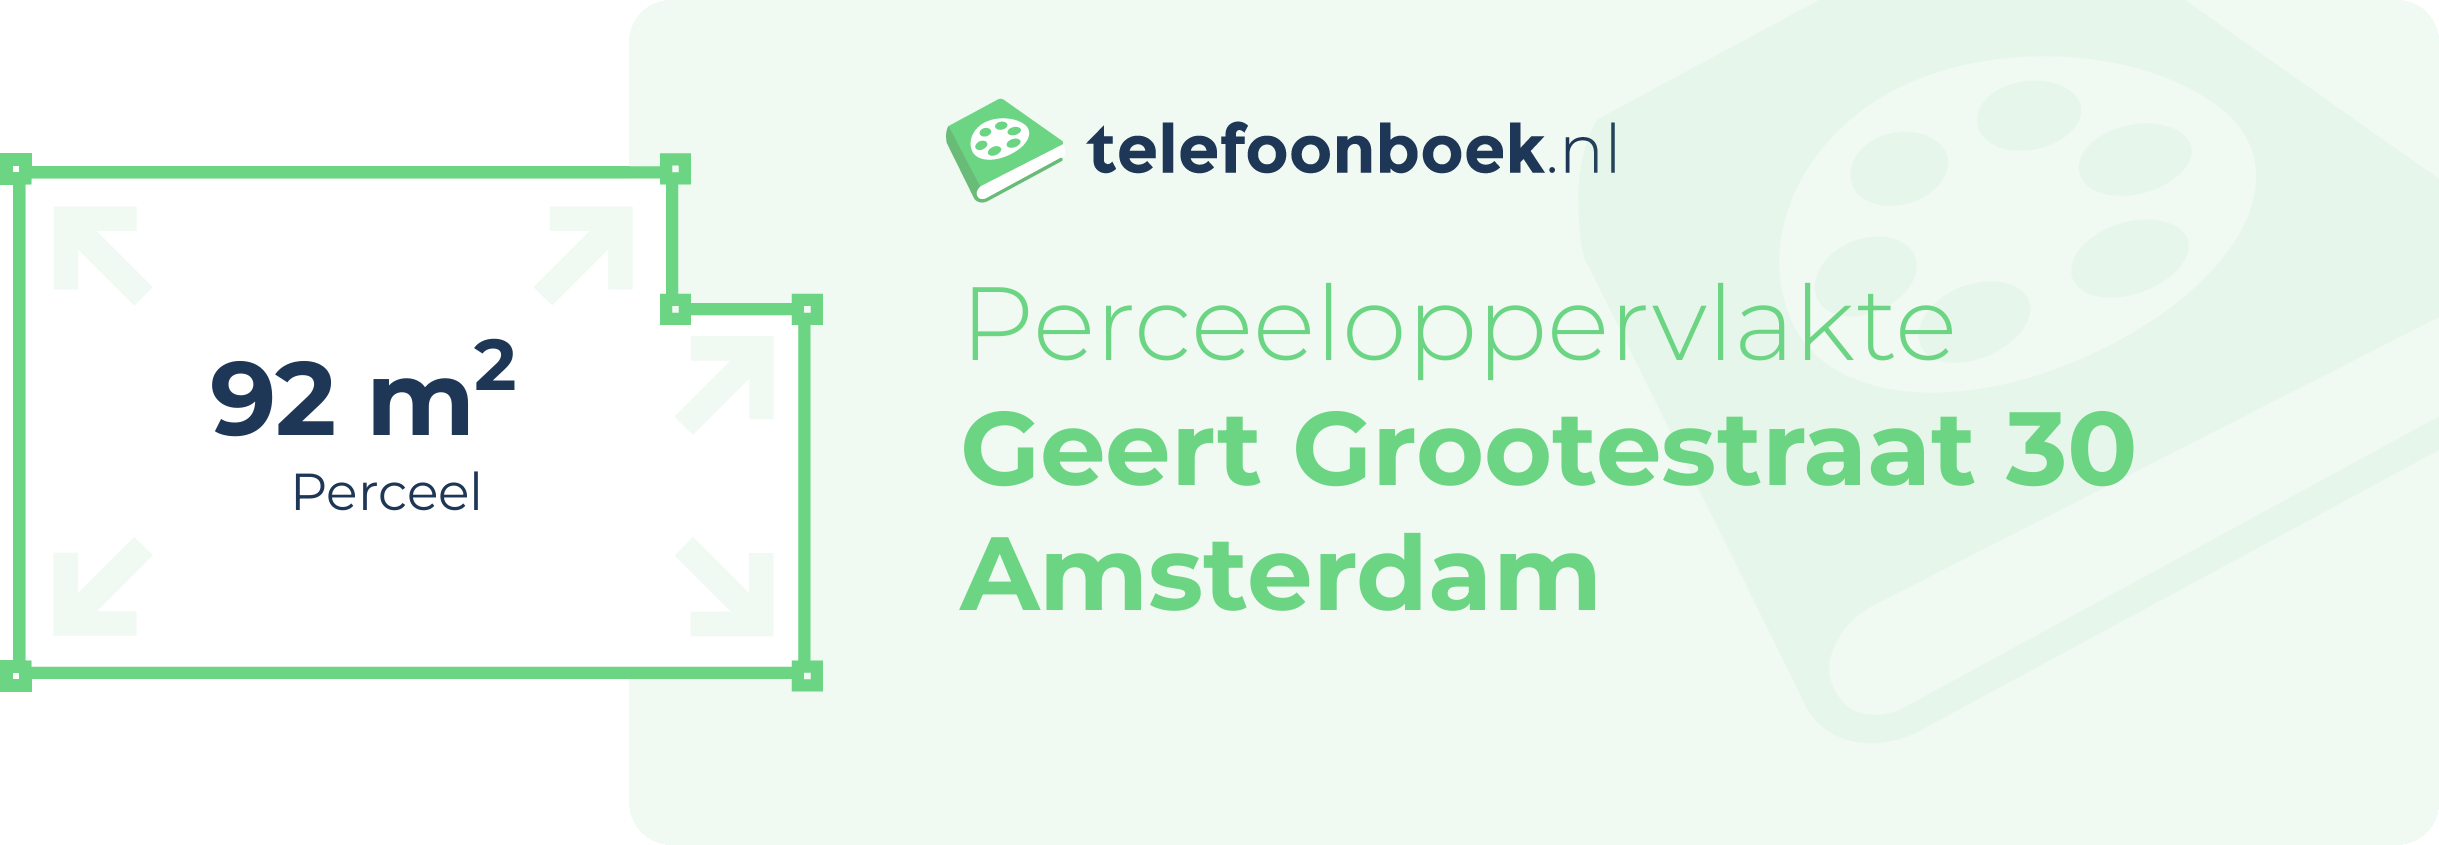 Perceeloppervlakte Geert Grootestraat 30 Amsterdam